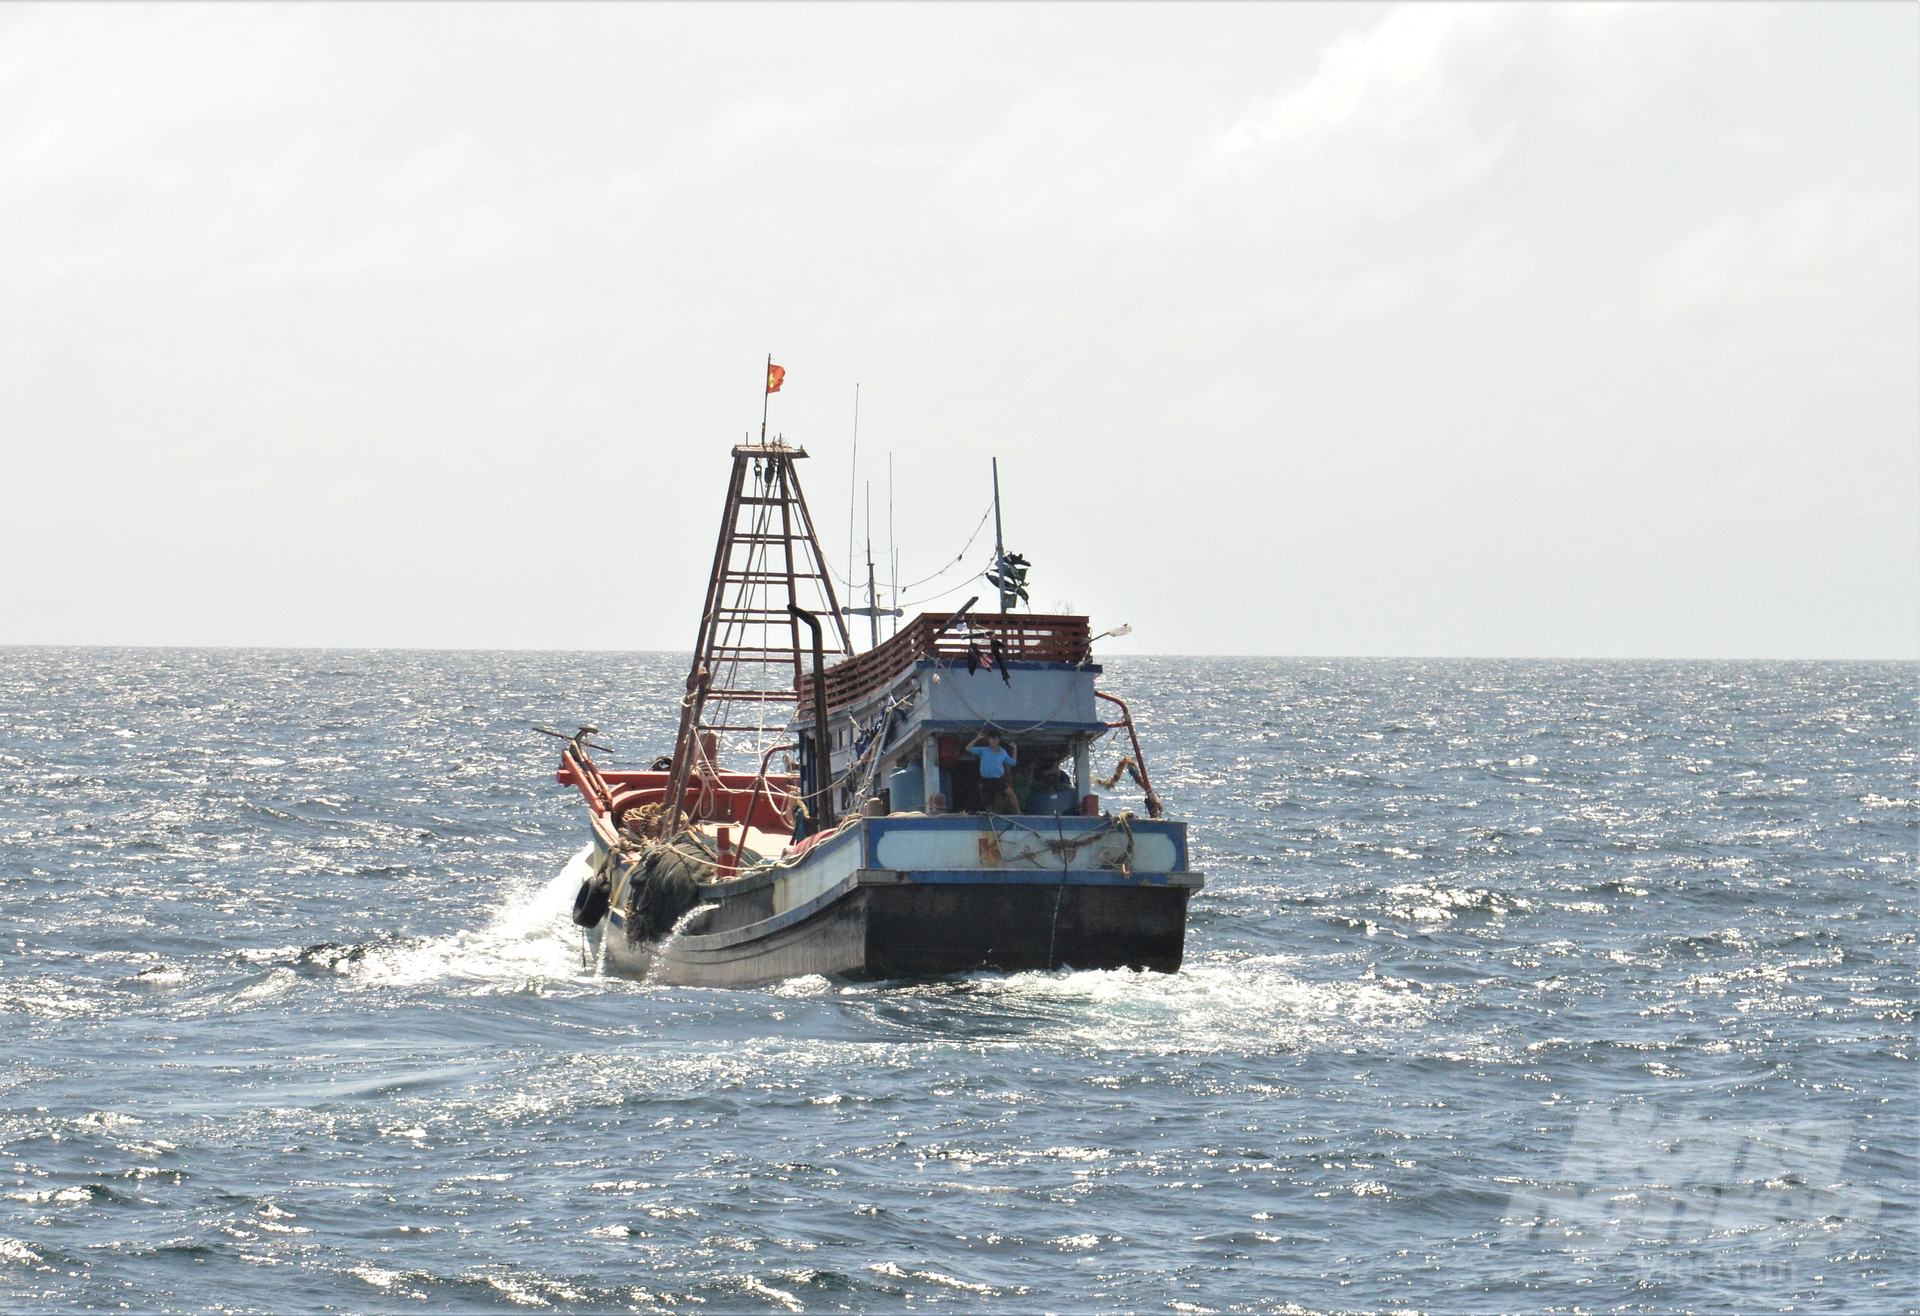 Những tàu cá thuộc diện mất tích của tỉnh Kiên Giang, được xếp vào nhóm tàu cá có nguy cơ cao vi phạm quy định khai thác thủy sản bất hợp pháp do không chịu sự quản lý của ngành chức năng. Ảnh: Trung Chánh.